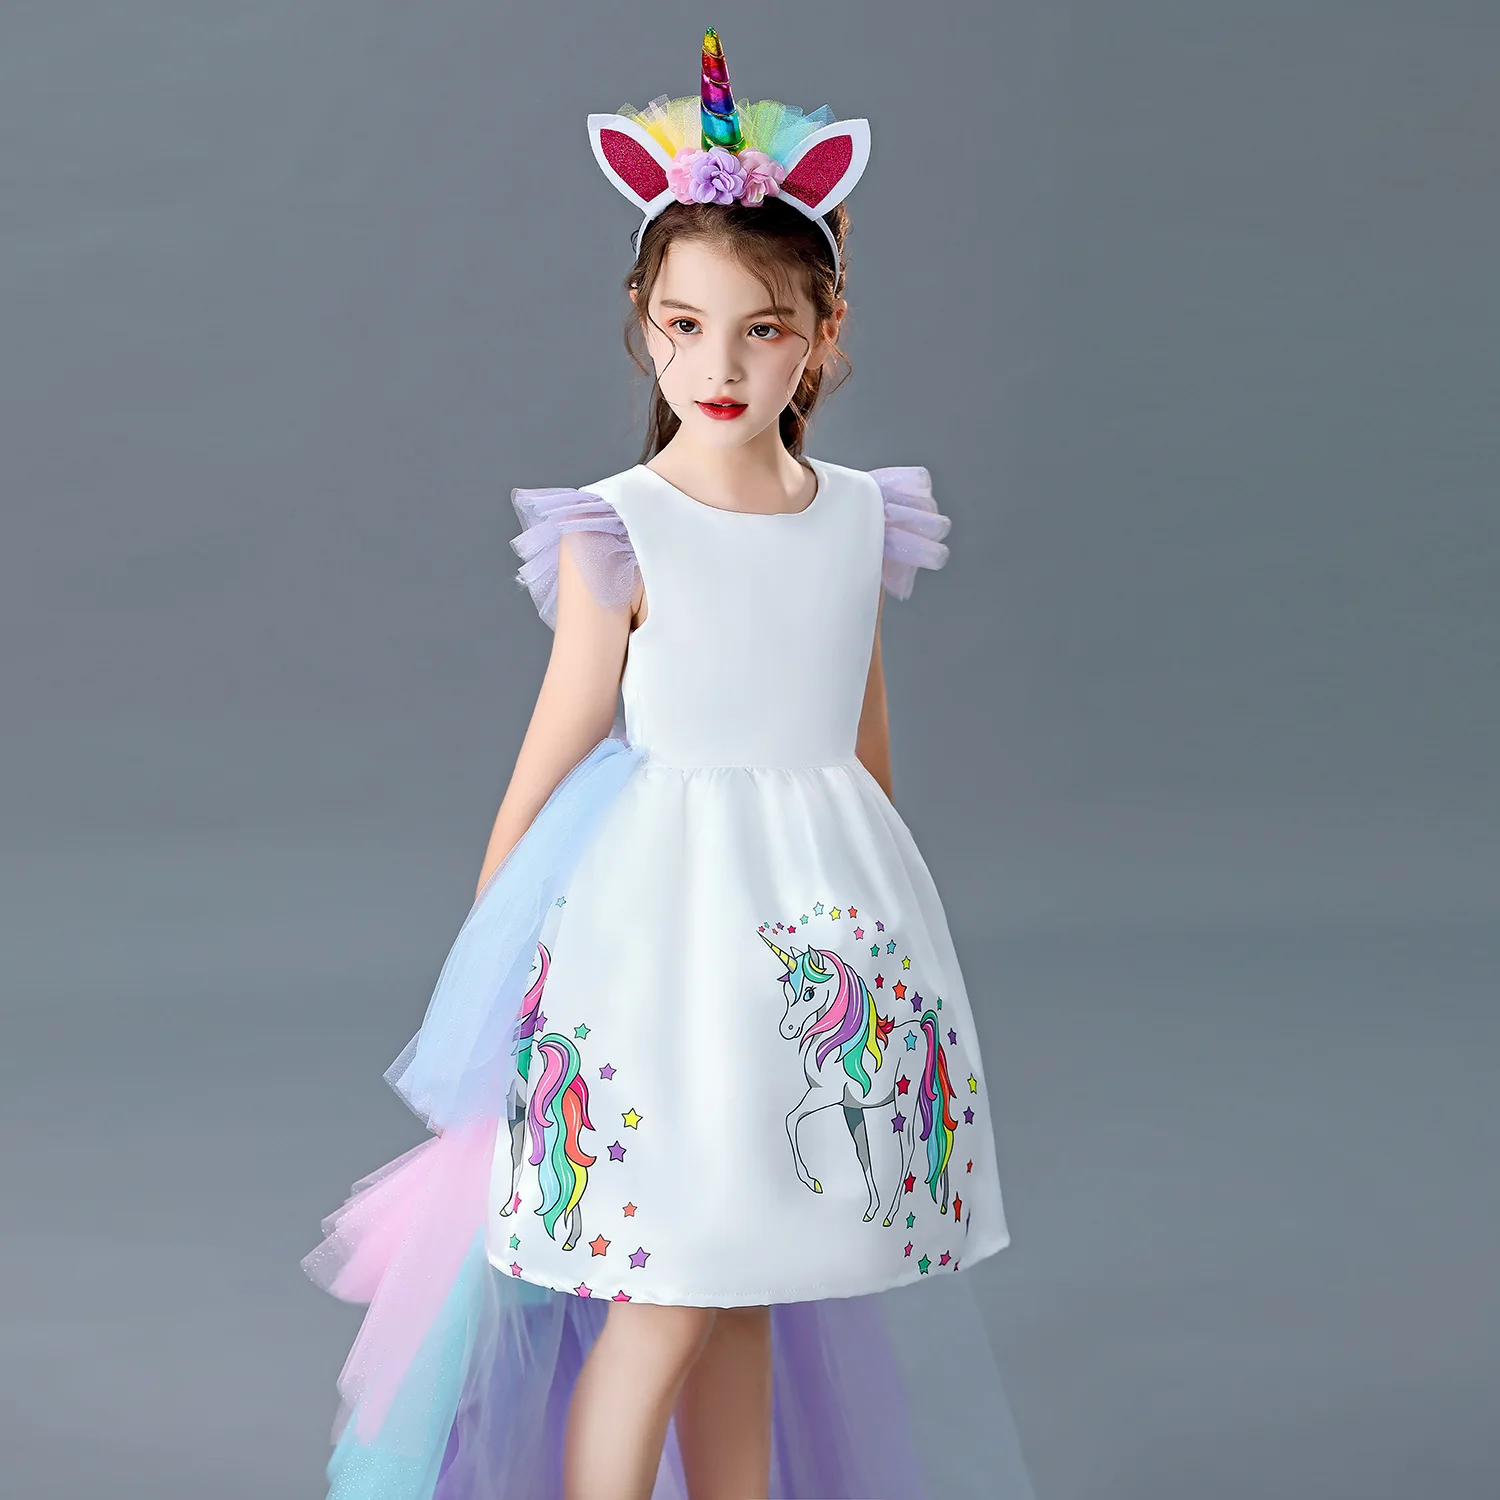 Платье с единорогом. Платье Единорог для 8 лет. Купить платье для девочки с единорогом нарядное.